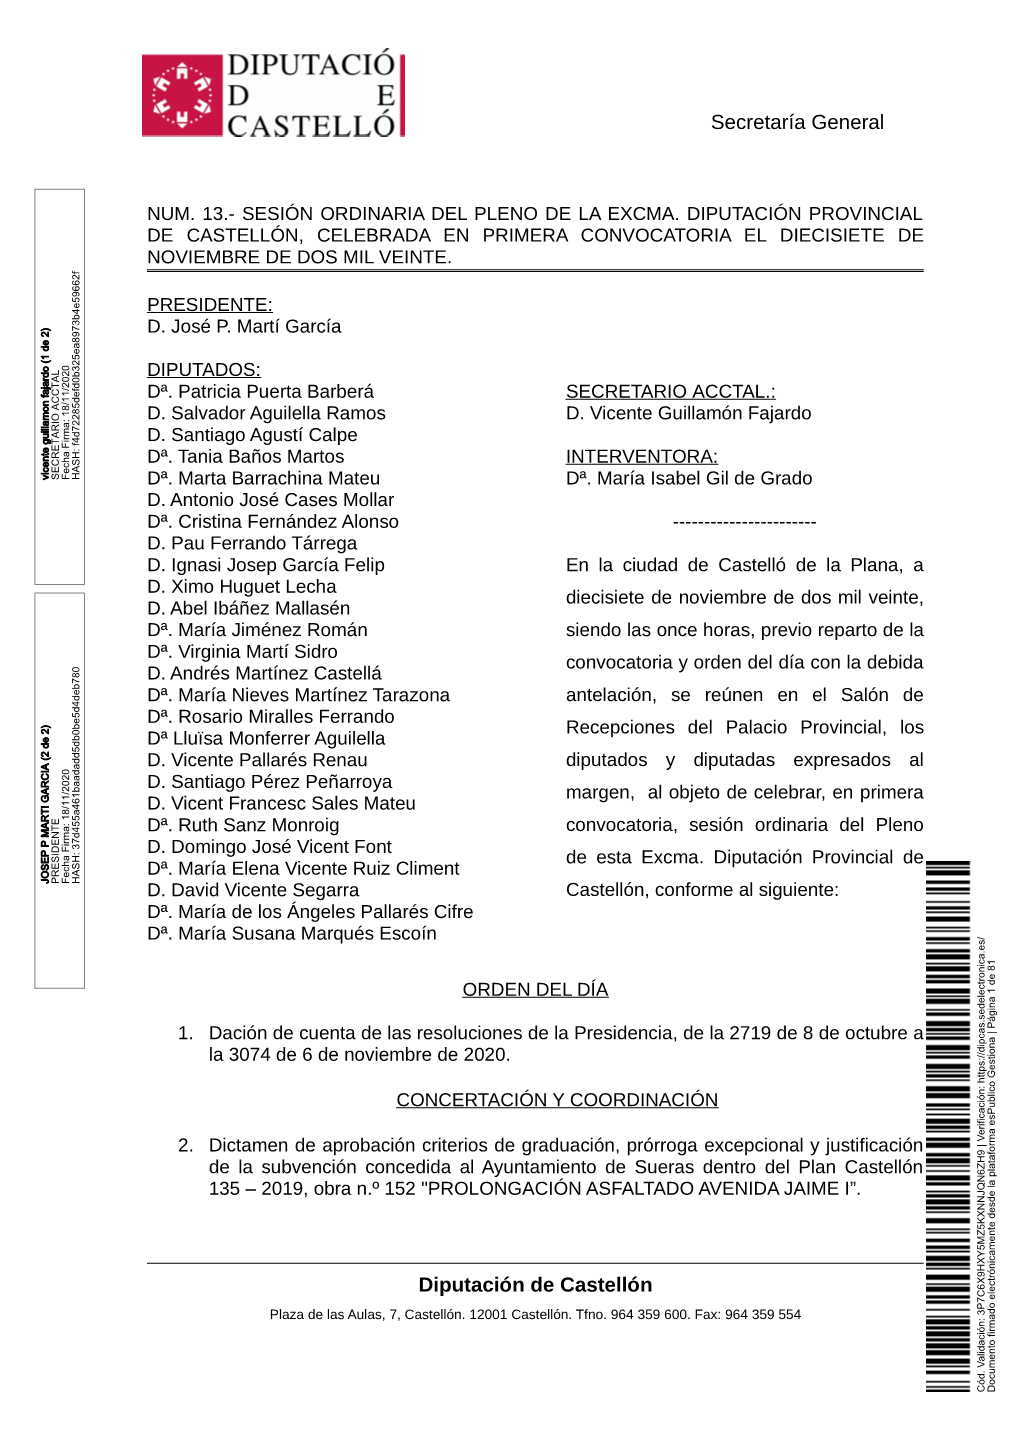 Secretaría General Diputación De Castellón